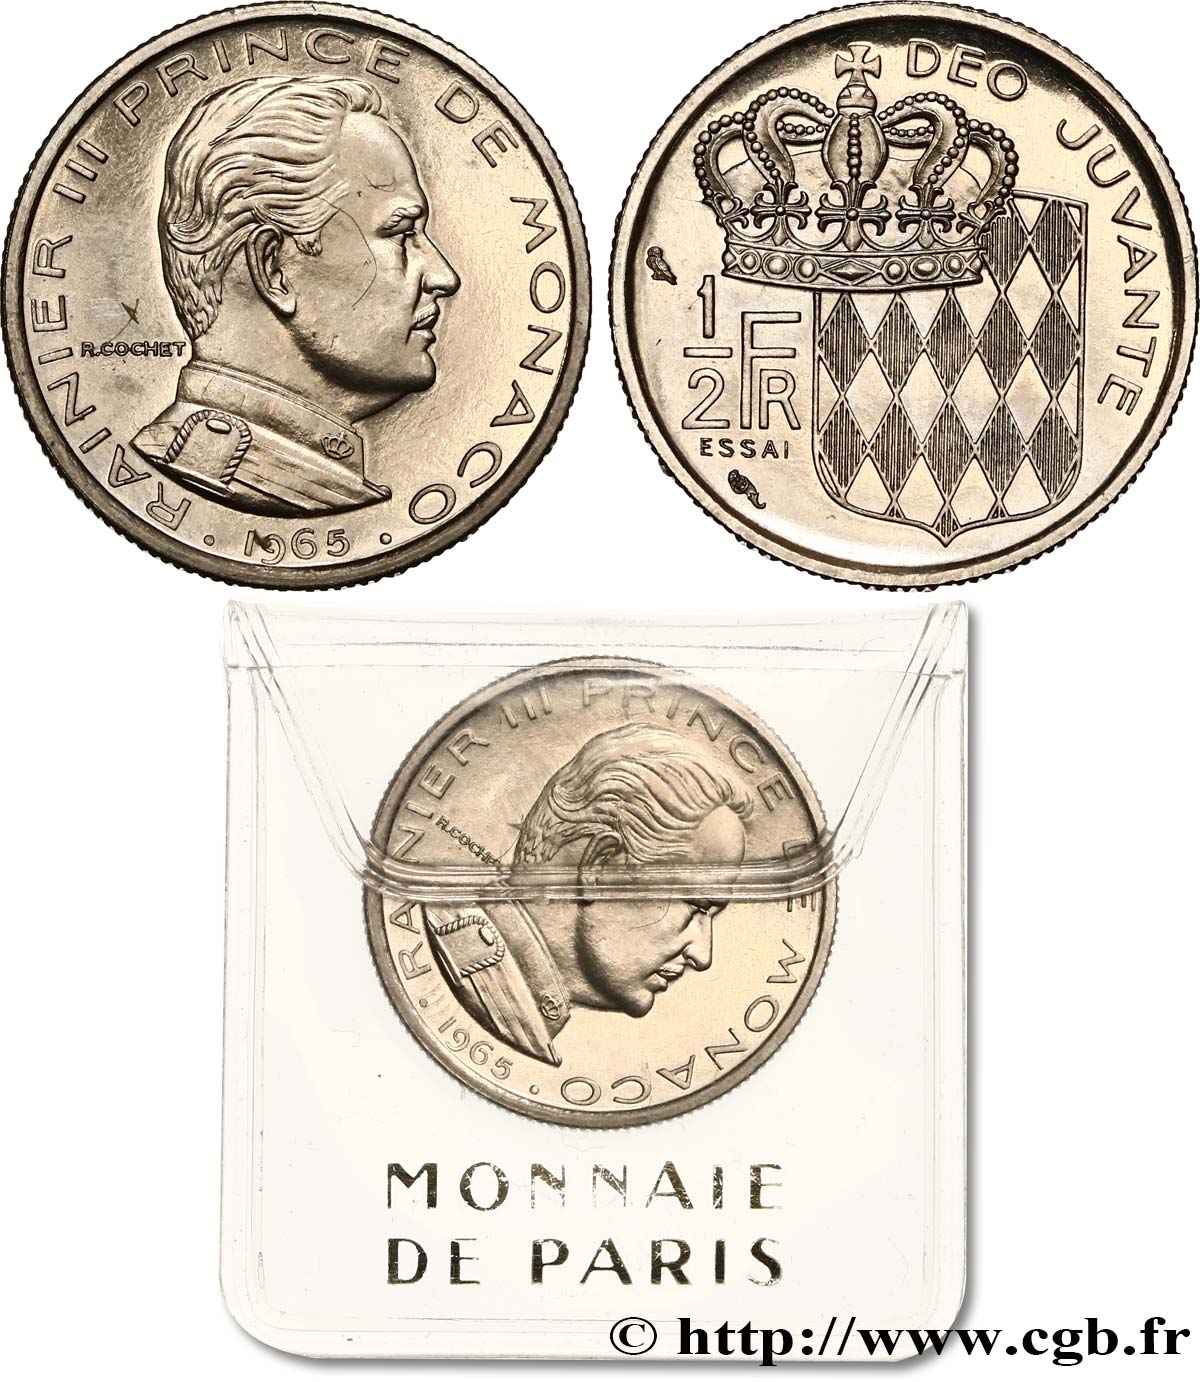 MONACO - FÜRSTENTUM MONACO - RAINIER III. Essai de 1/2 Franc 1965 Paris fST 